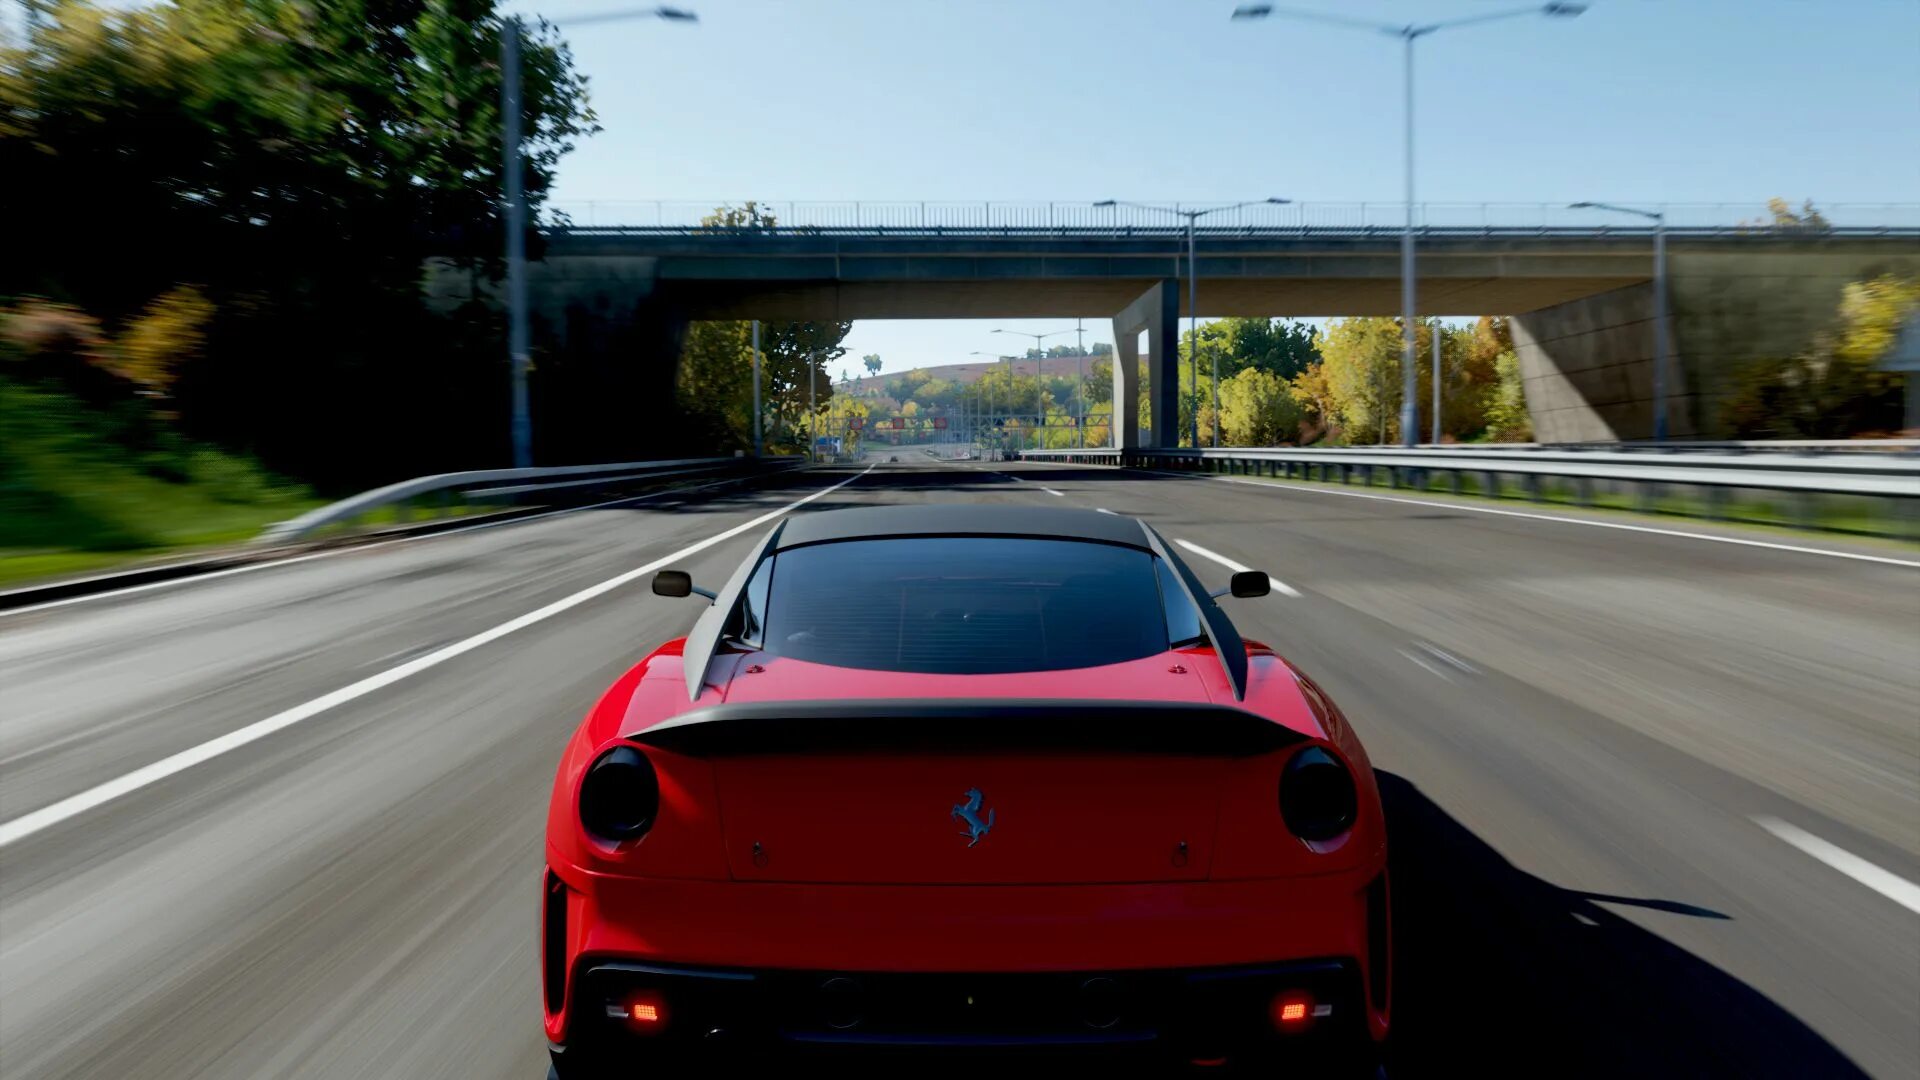 Forza horizon 4 ferrari. Ferrari 599xx Forza Horizon. Forza Horizon 4 Ferrari 599xx. Ferrari 599xx EVO Forza Horizon 4. Форза хорайзен 4 машины.